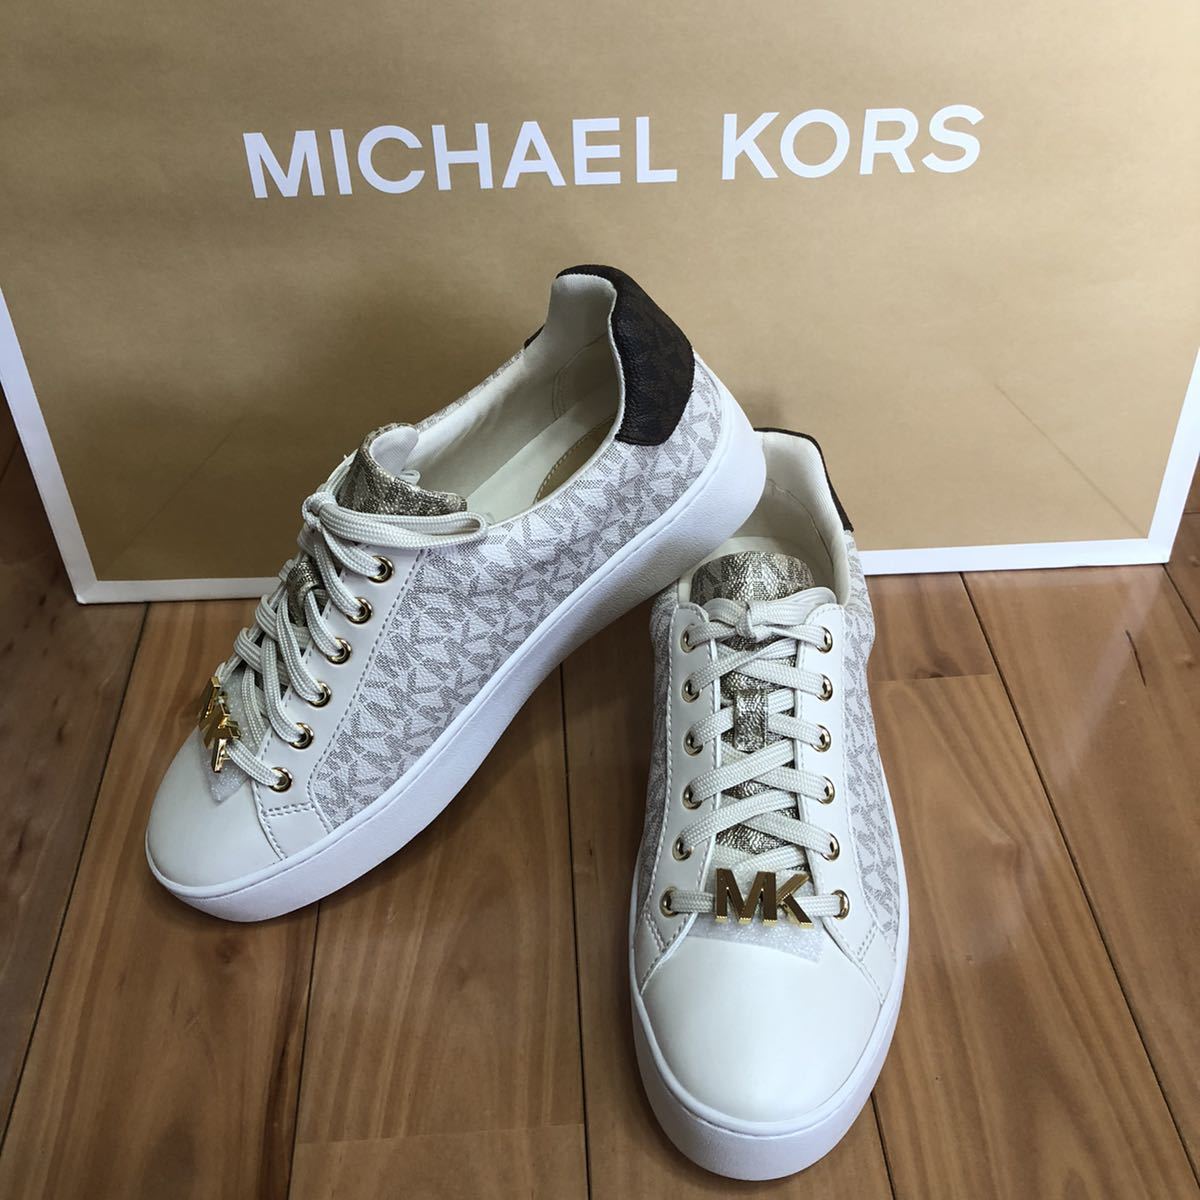  Michael Kors [MICHAEL KORS] sneakers 7M (24cm)